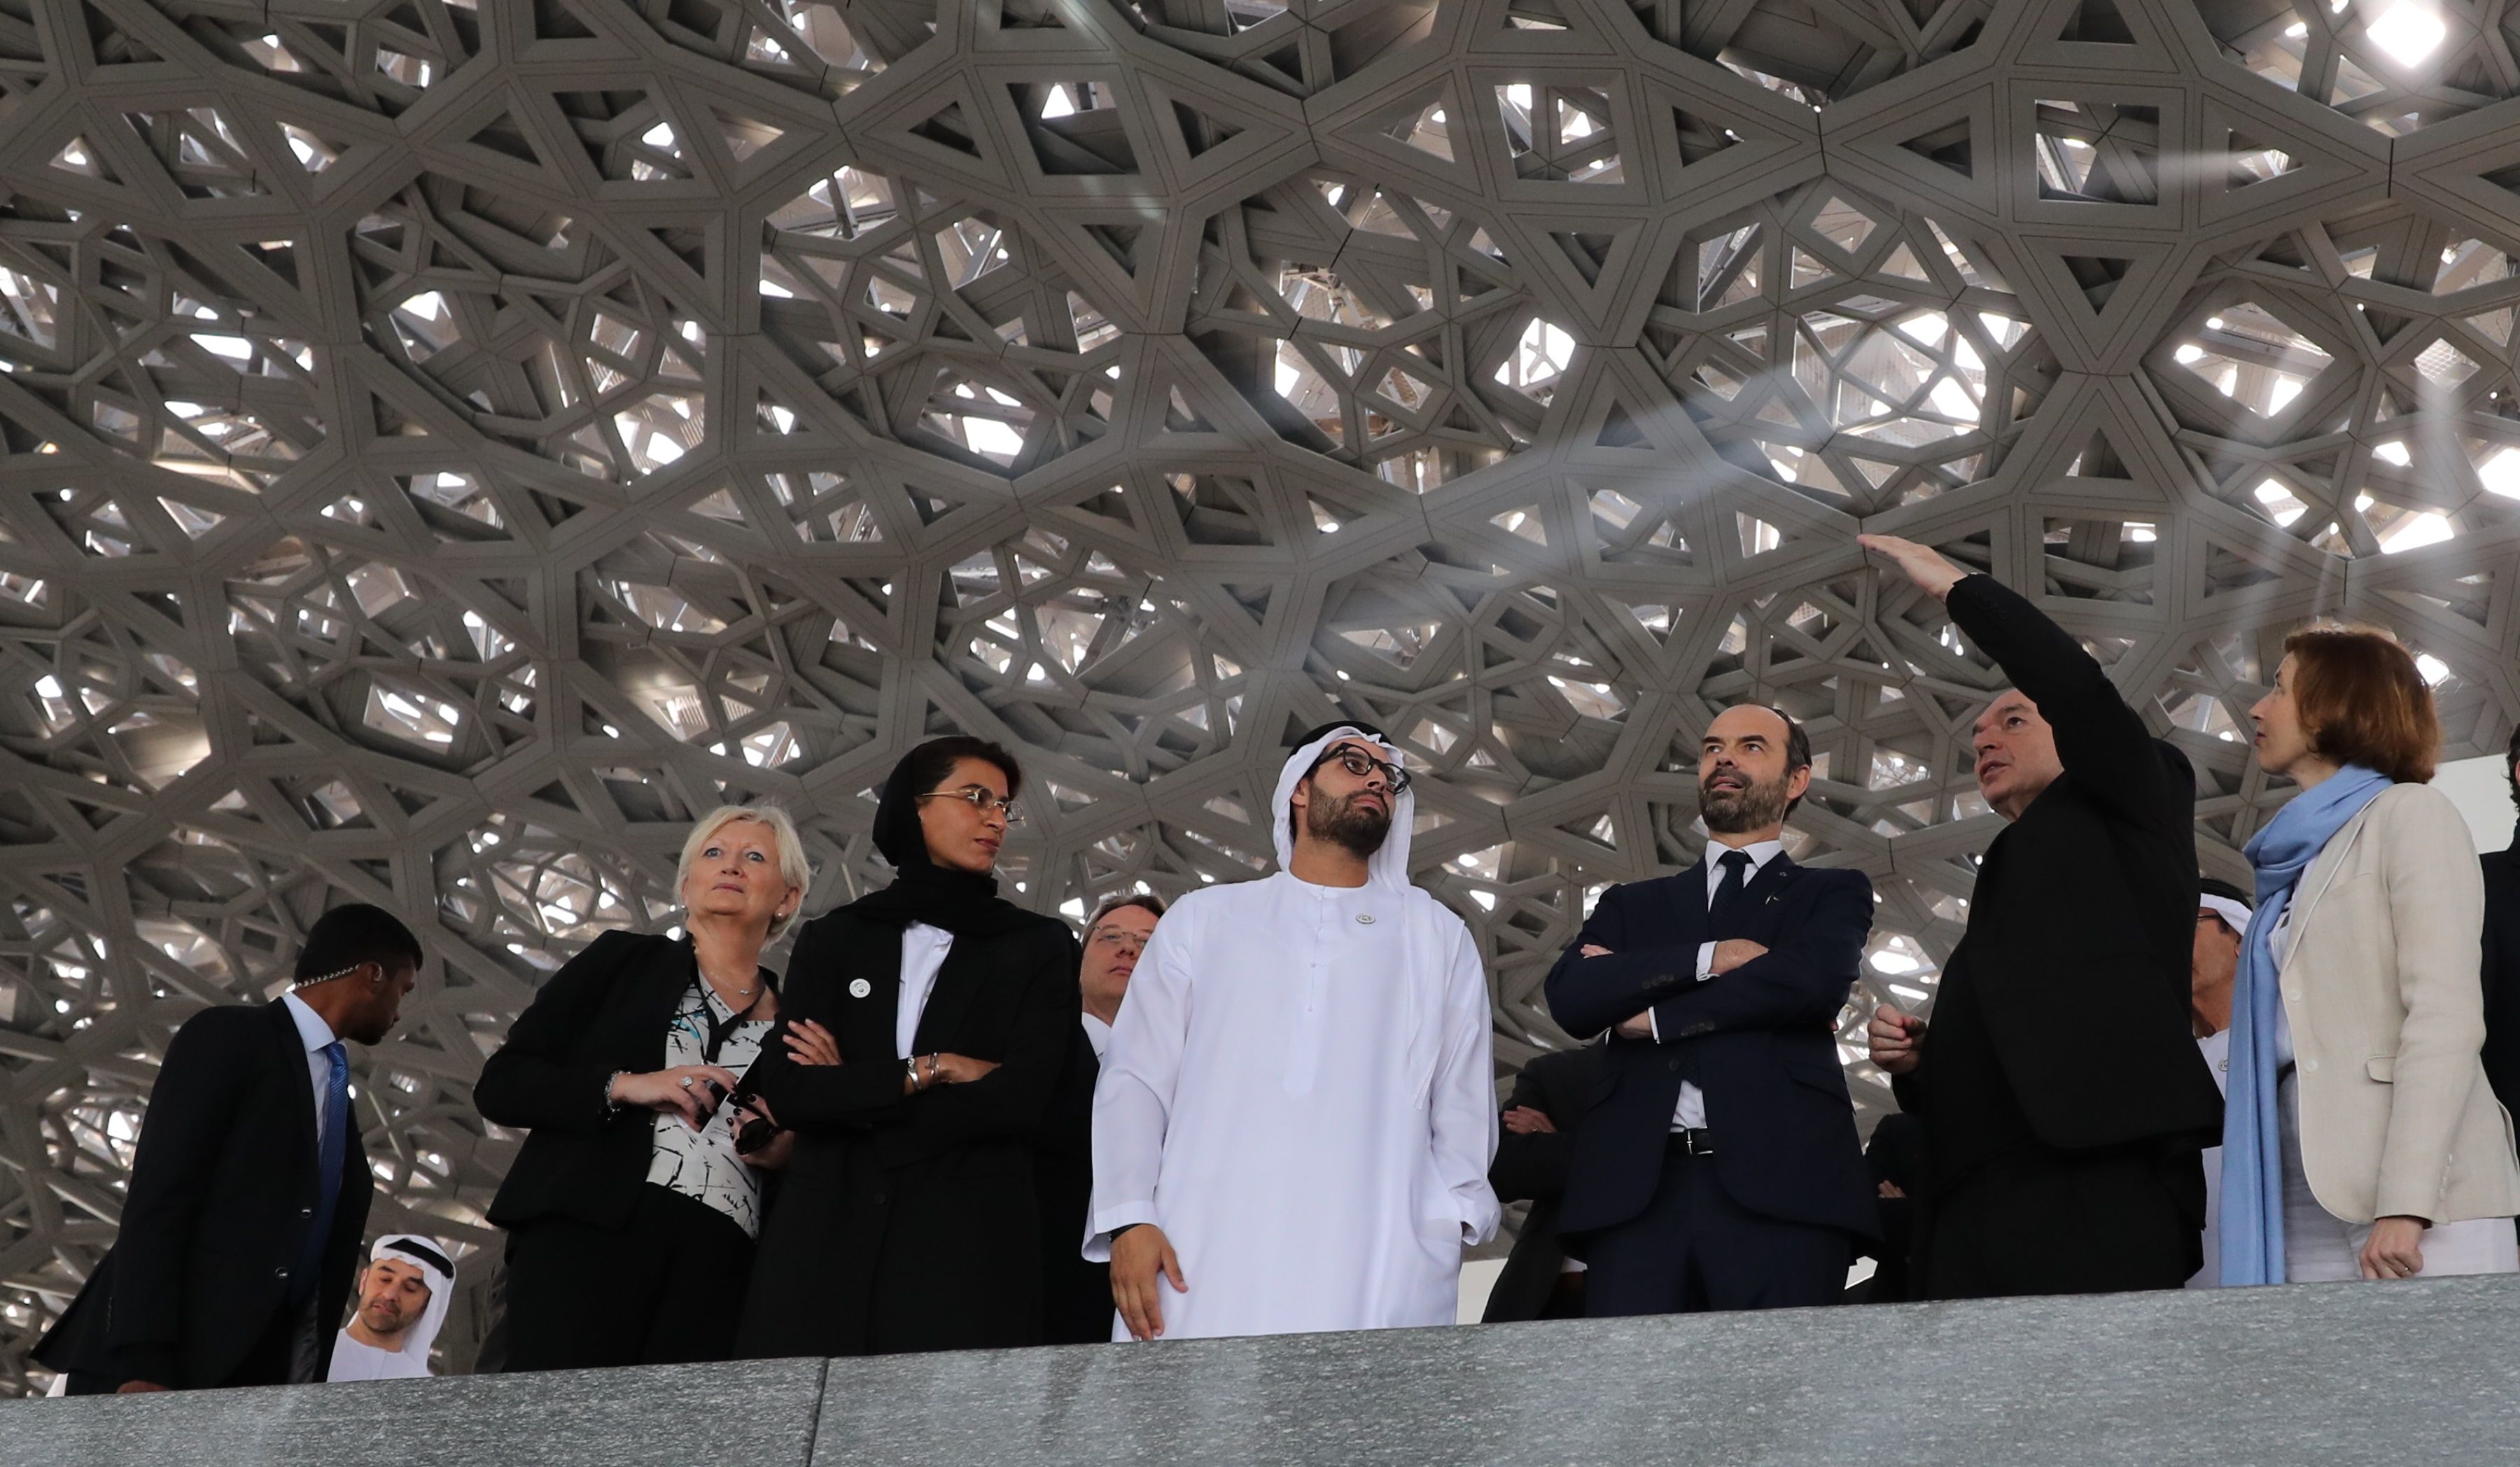 وصول استقبال رئيس الوزراء الفرنسى إدوارد فيليب إلى الإمارات